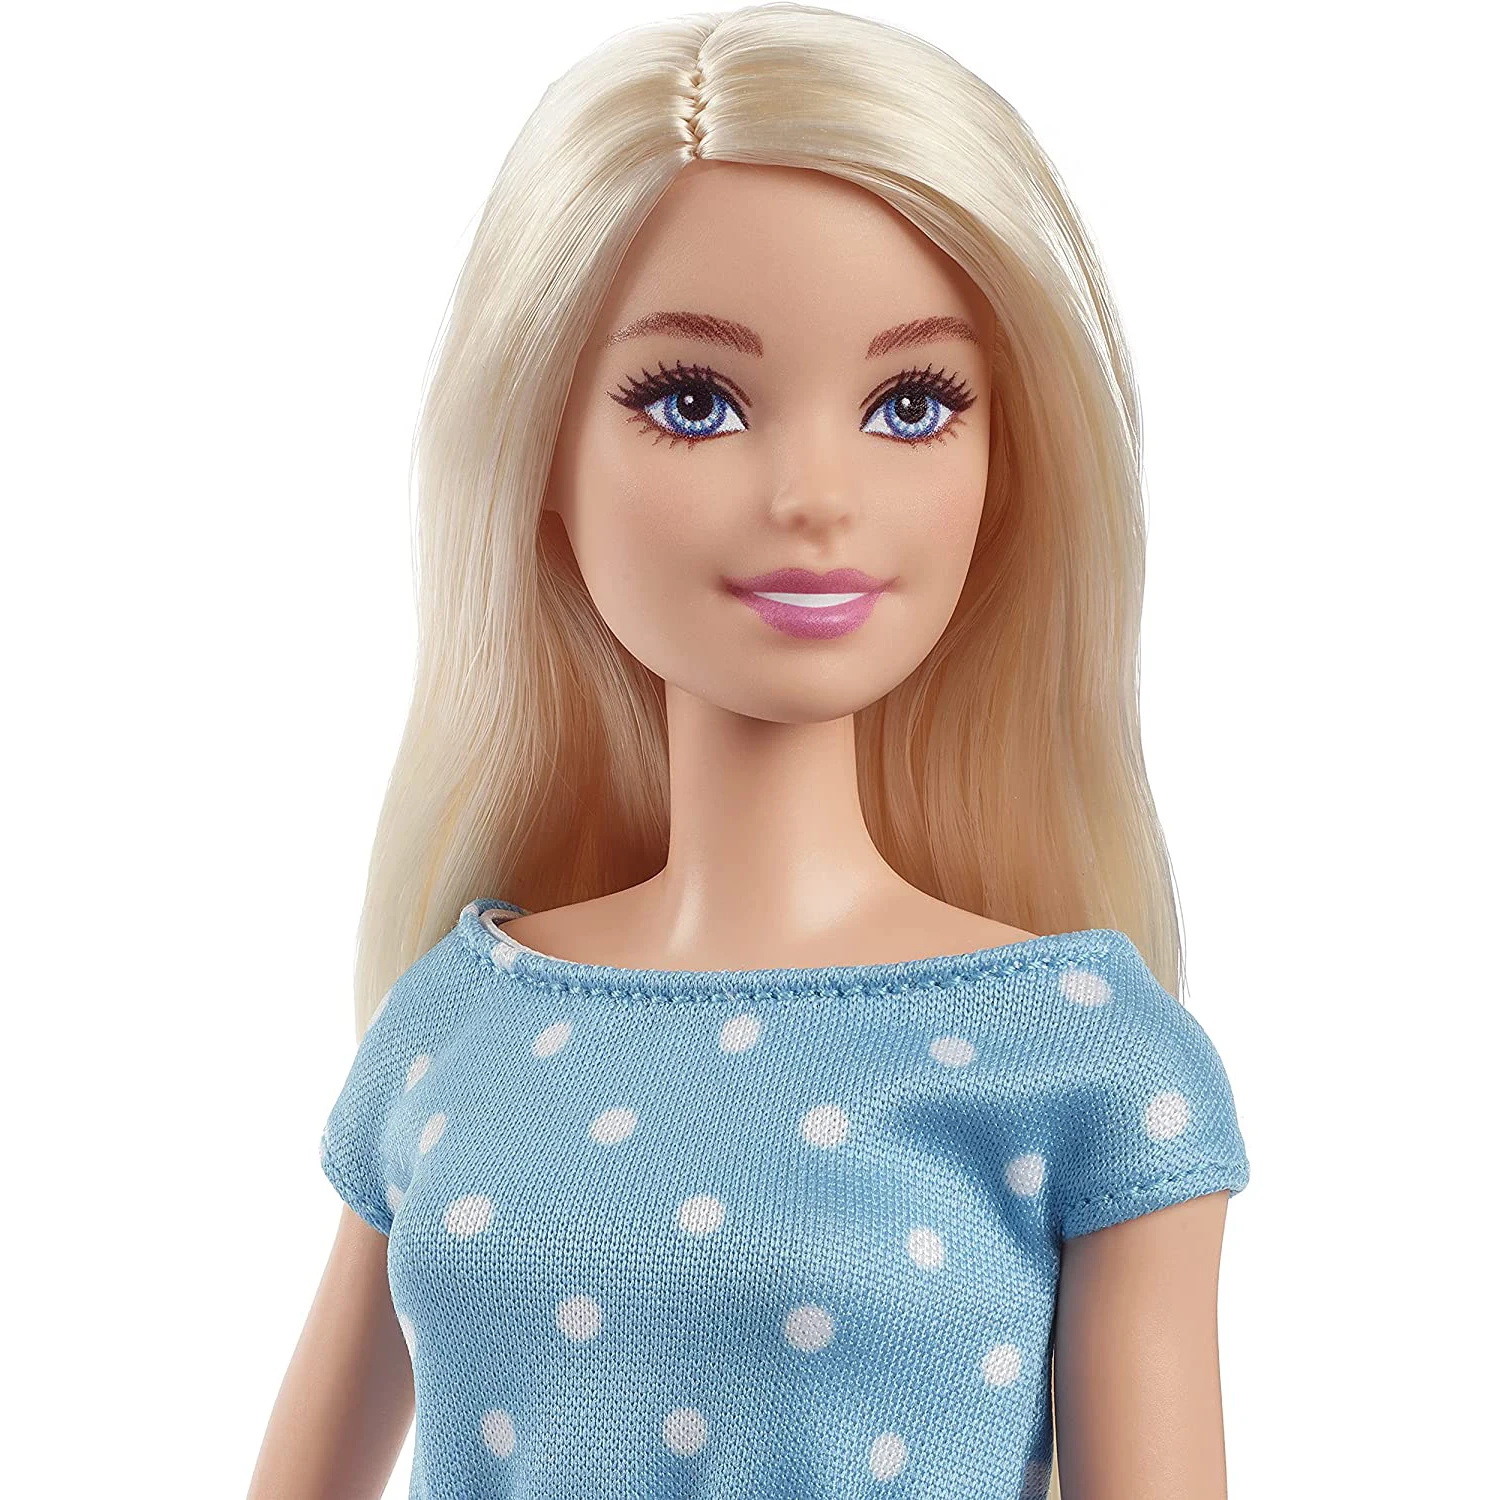 Boneca Barbie com Acessórios - Cabelo e Maquiagem - Malibu